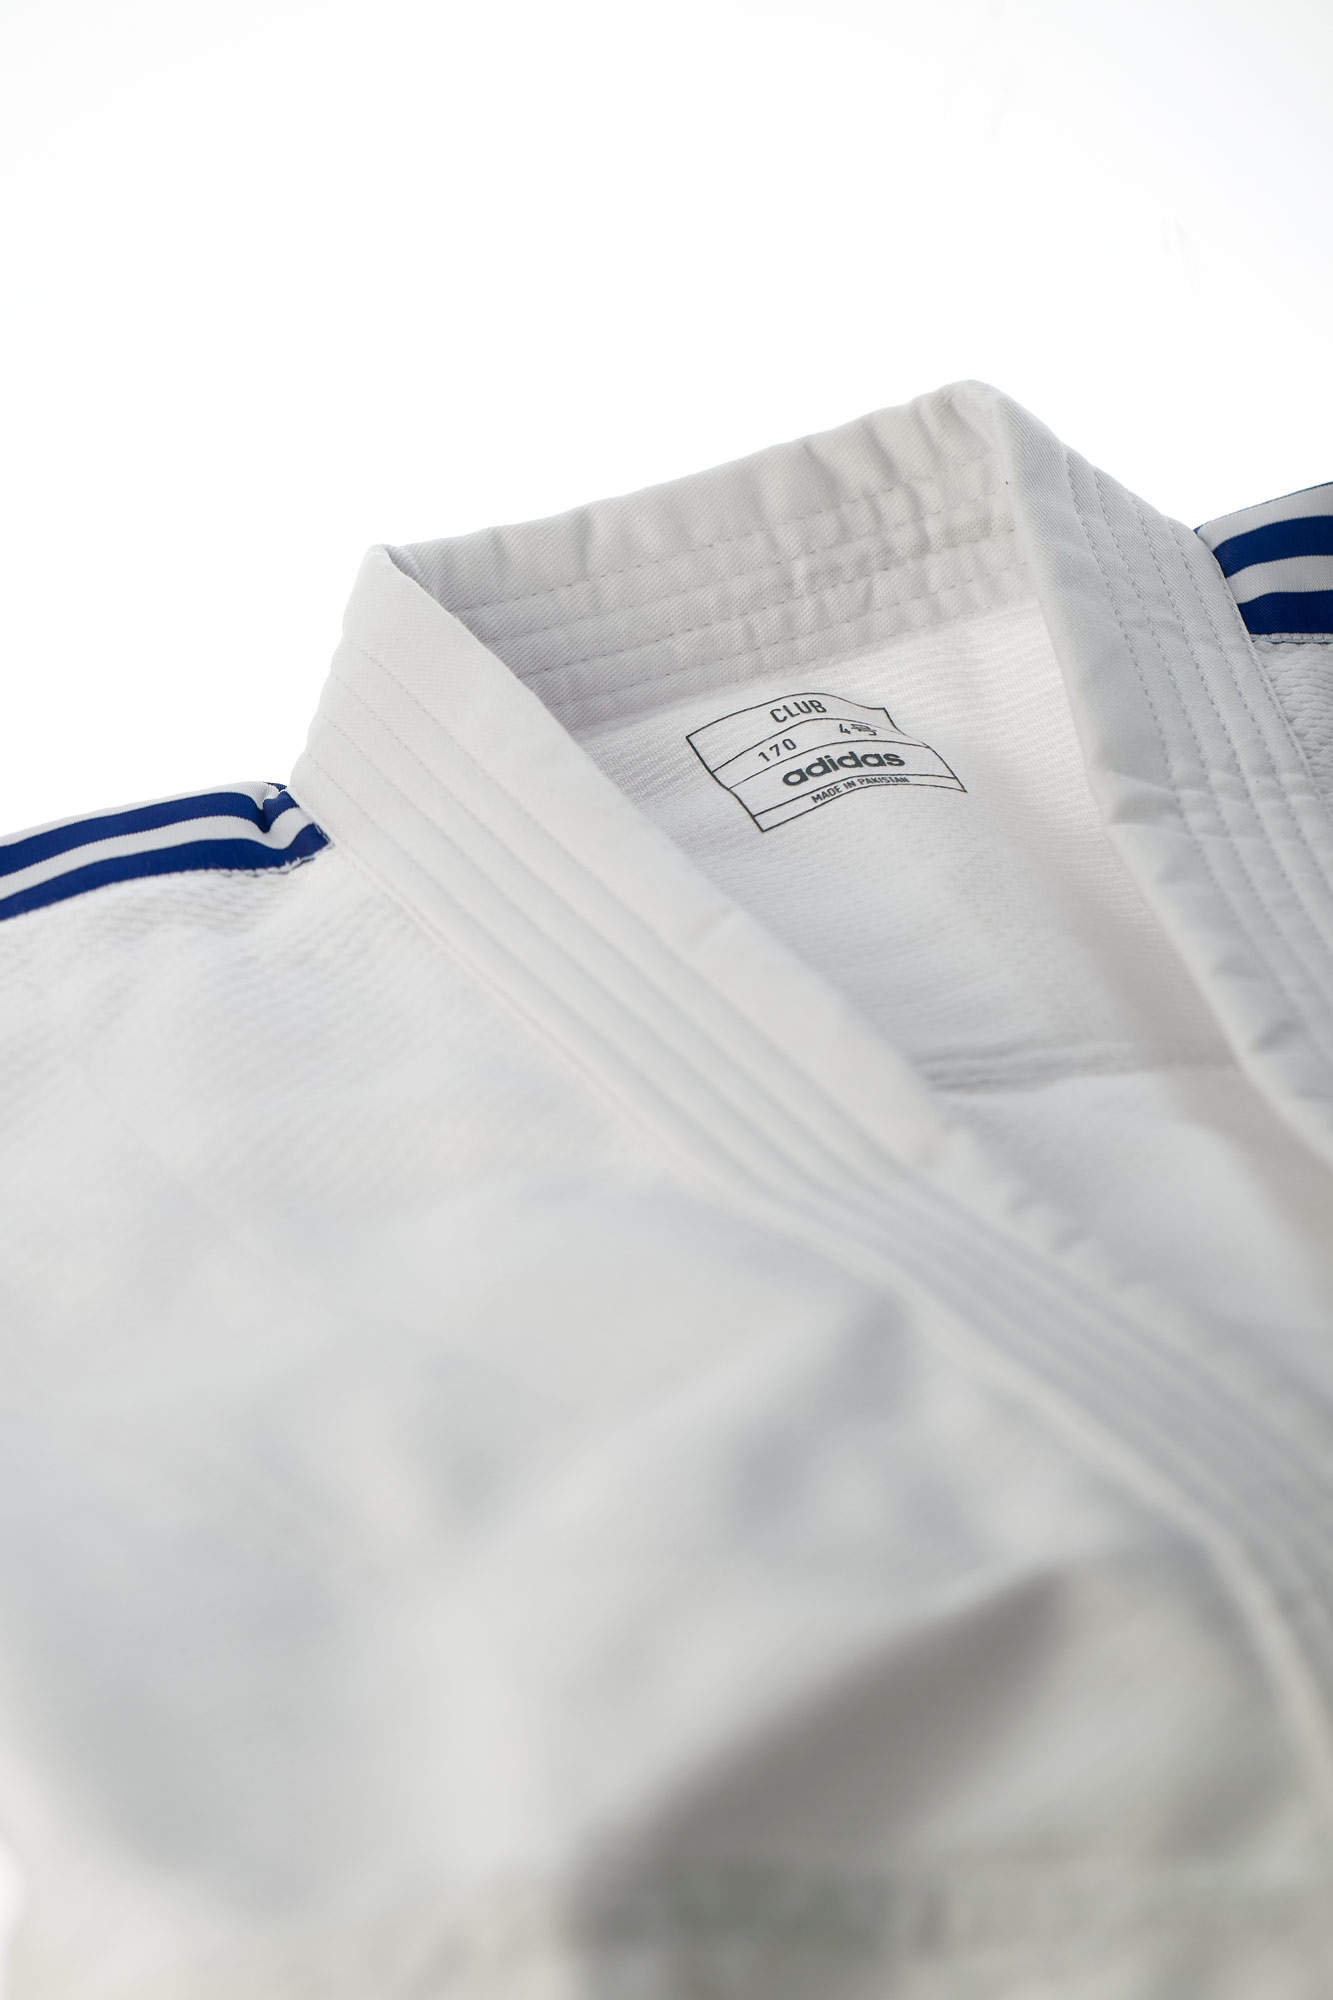 adidas judo gi Club J350E white/blue stripes